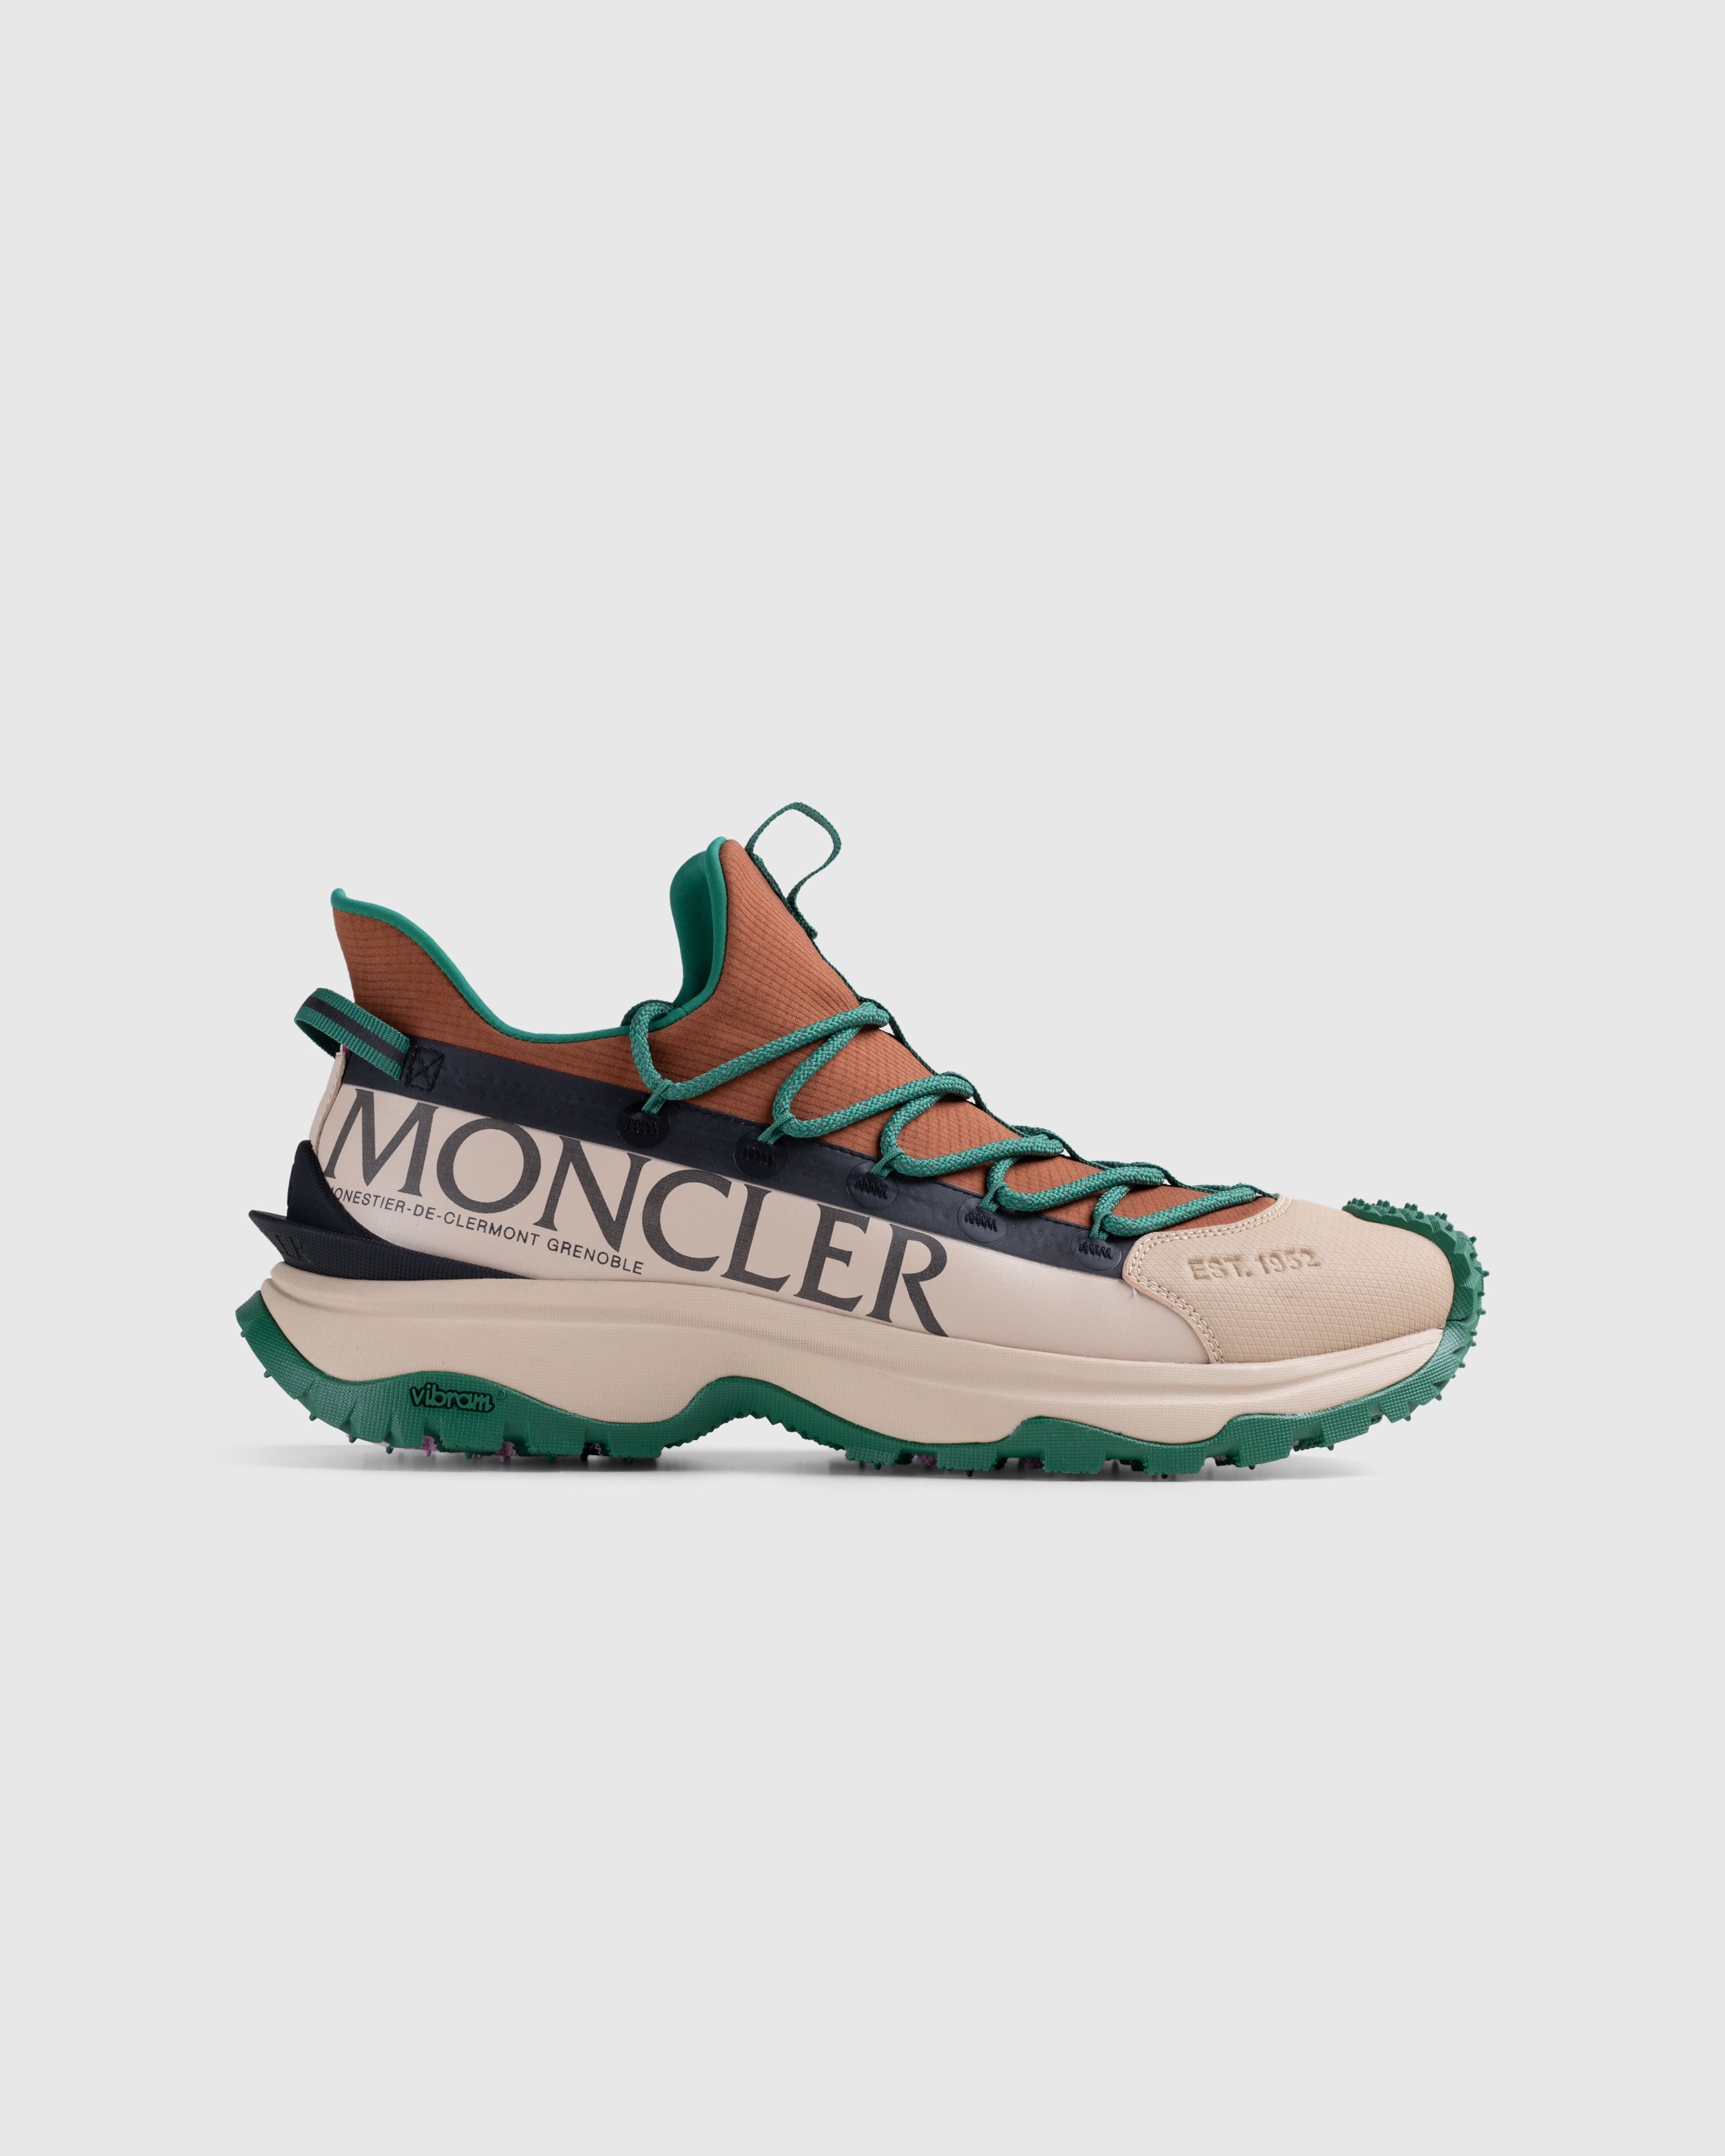 Moncler - Trailgrip Lite 2 Sneakers Brown/Green - Footwear - Orange - Image 1